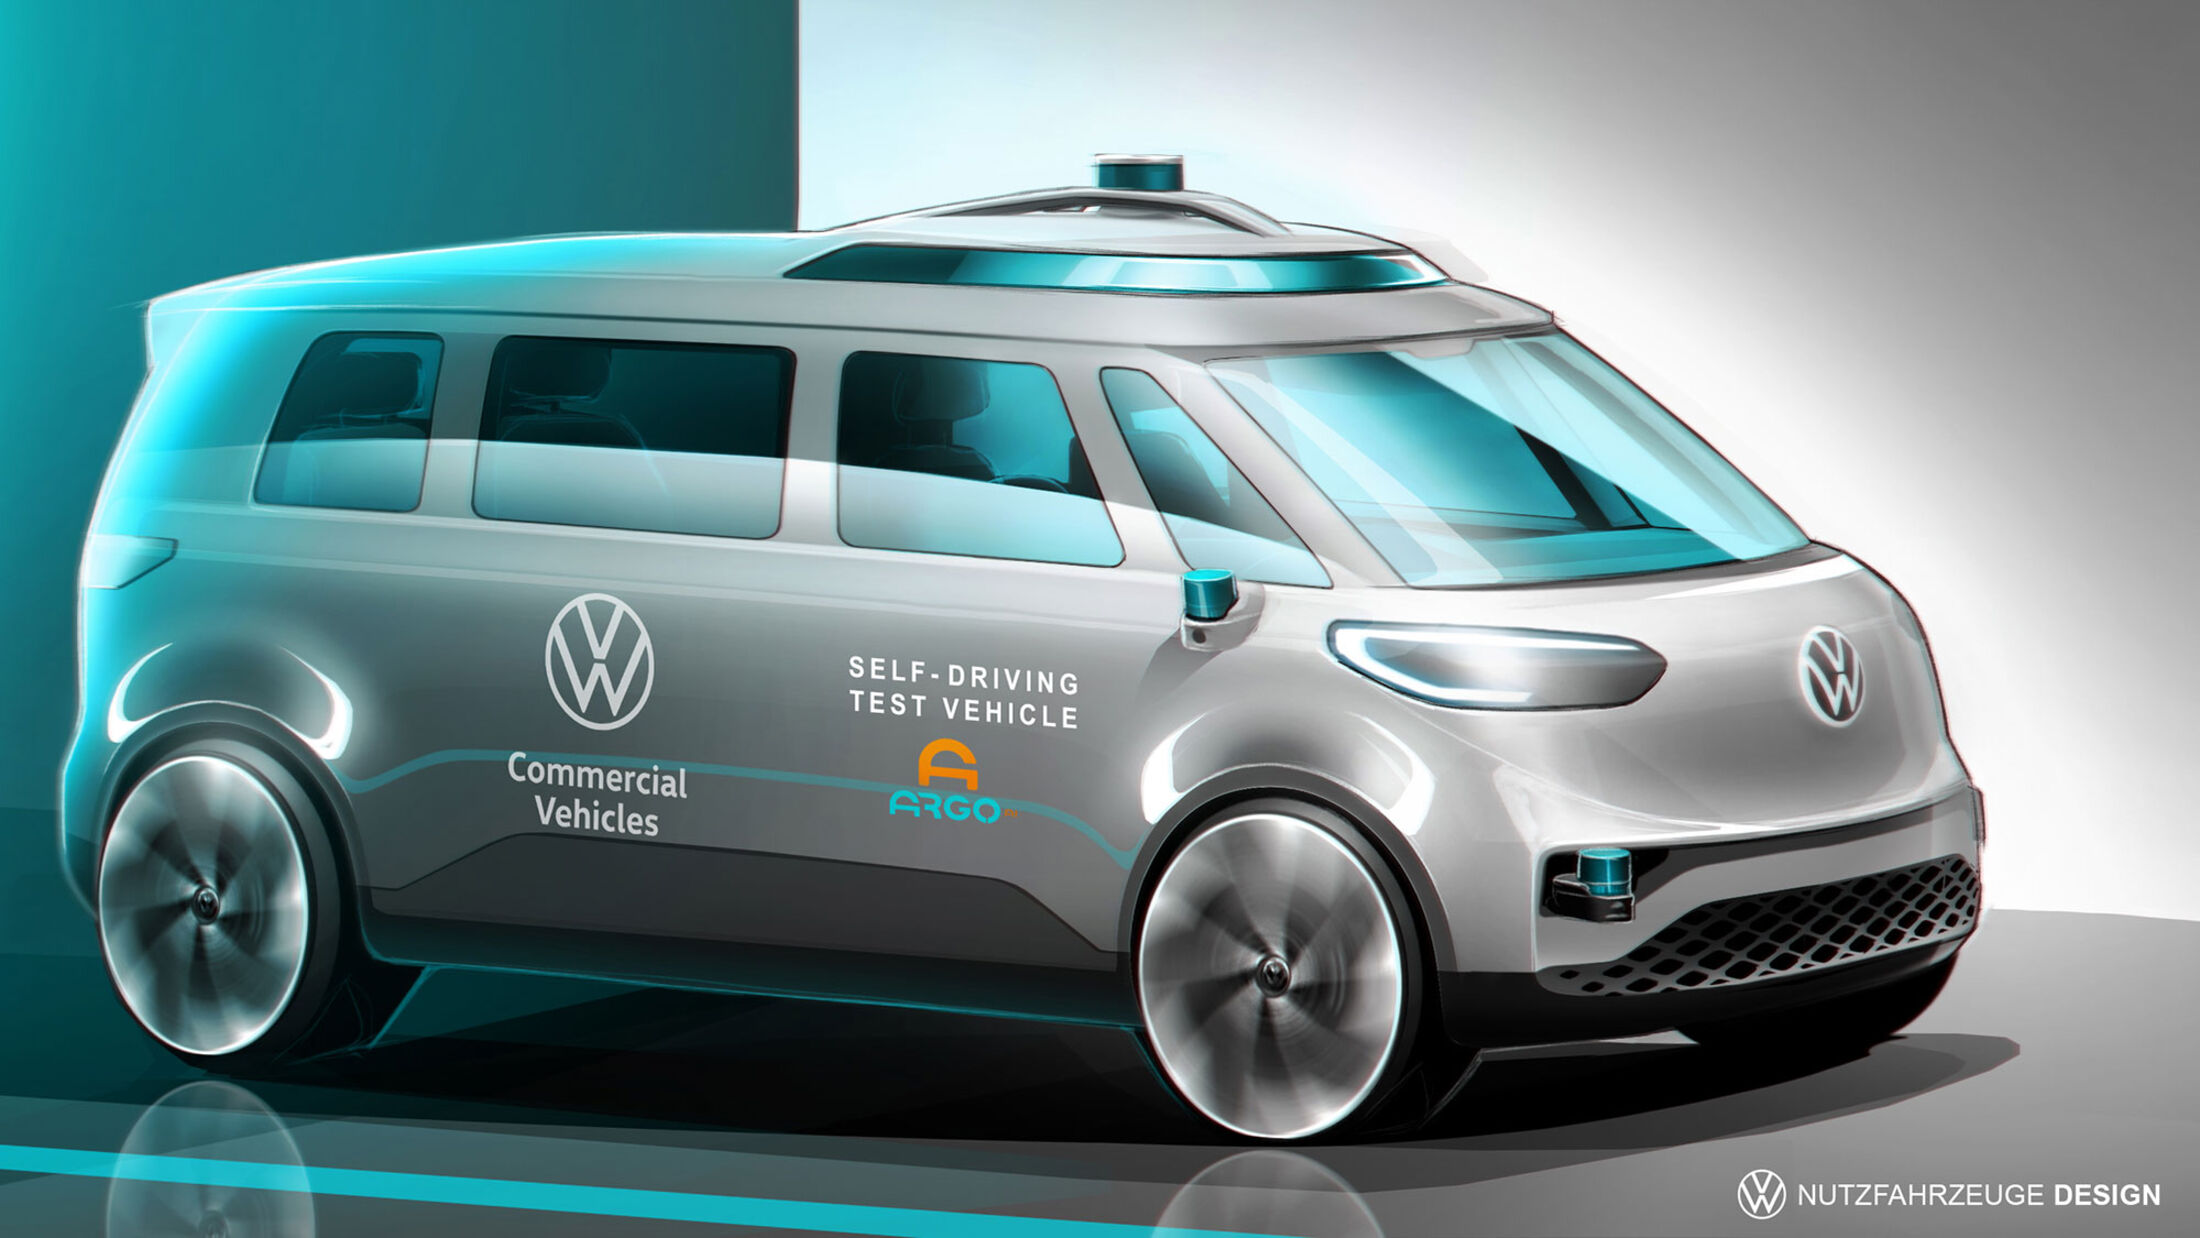 VW: Teile von eigenem Betriebssystem laufen in neuen Fahrzeugen - OM online